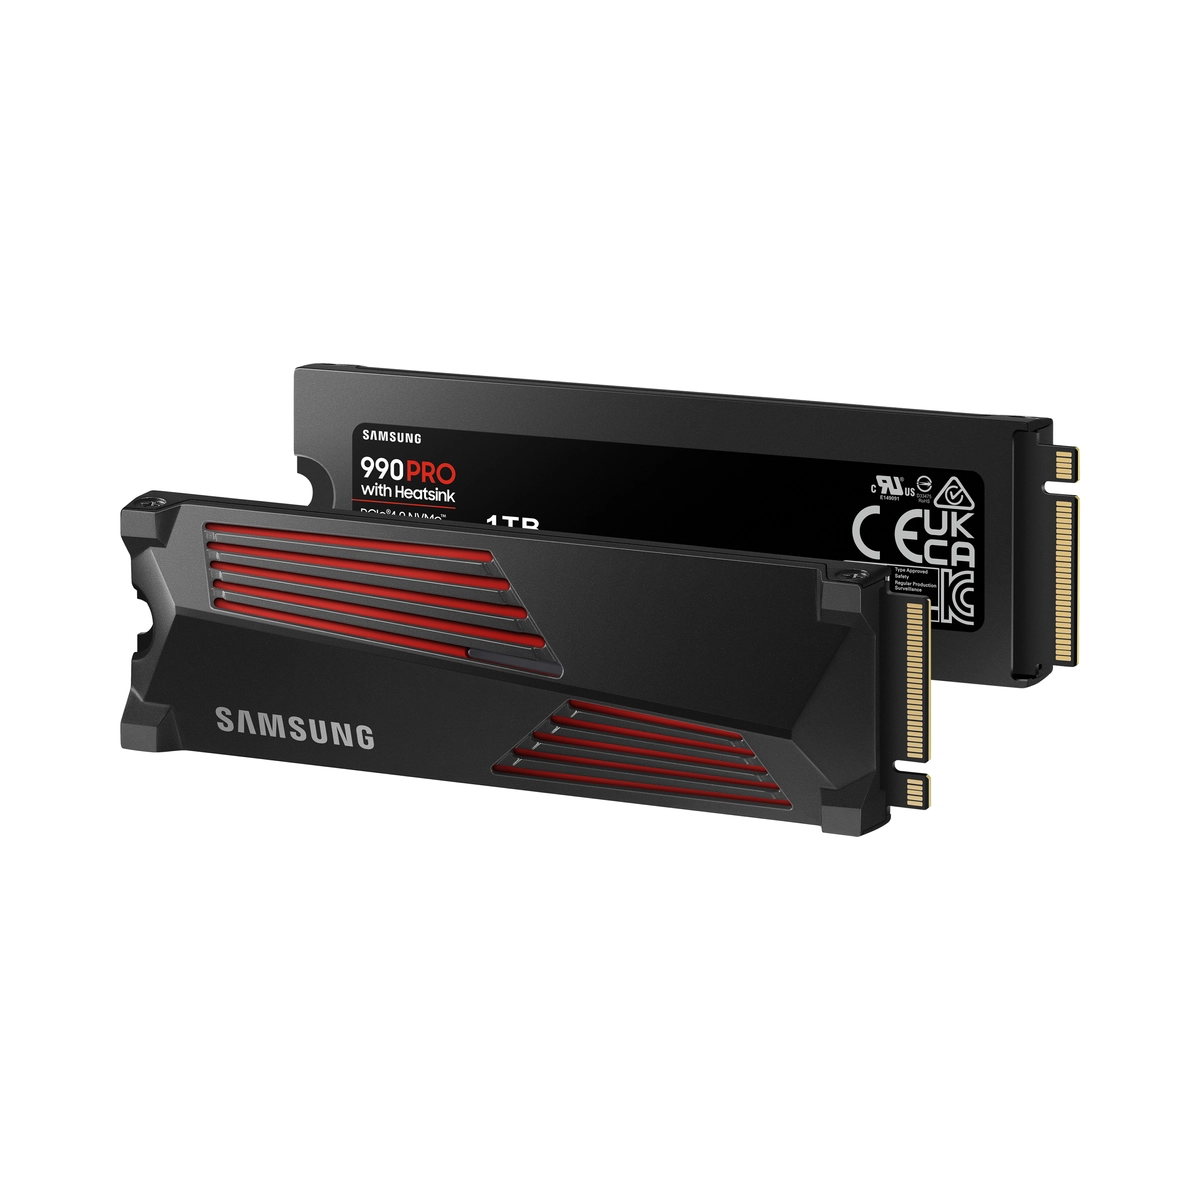 SSD Int 990 PRO 1TB Heatsink PCIe M.2